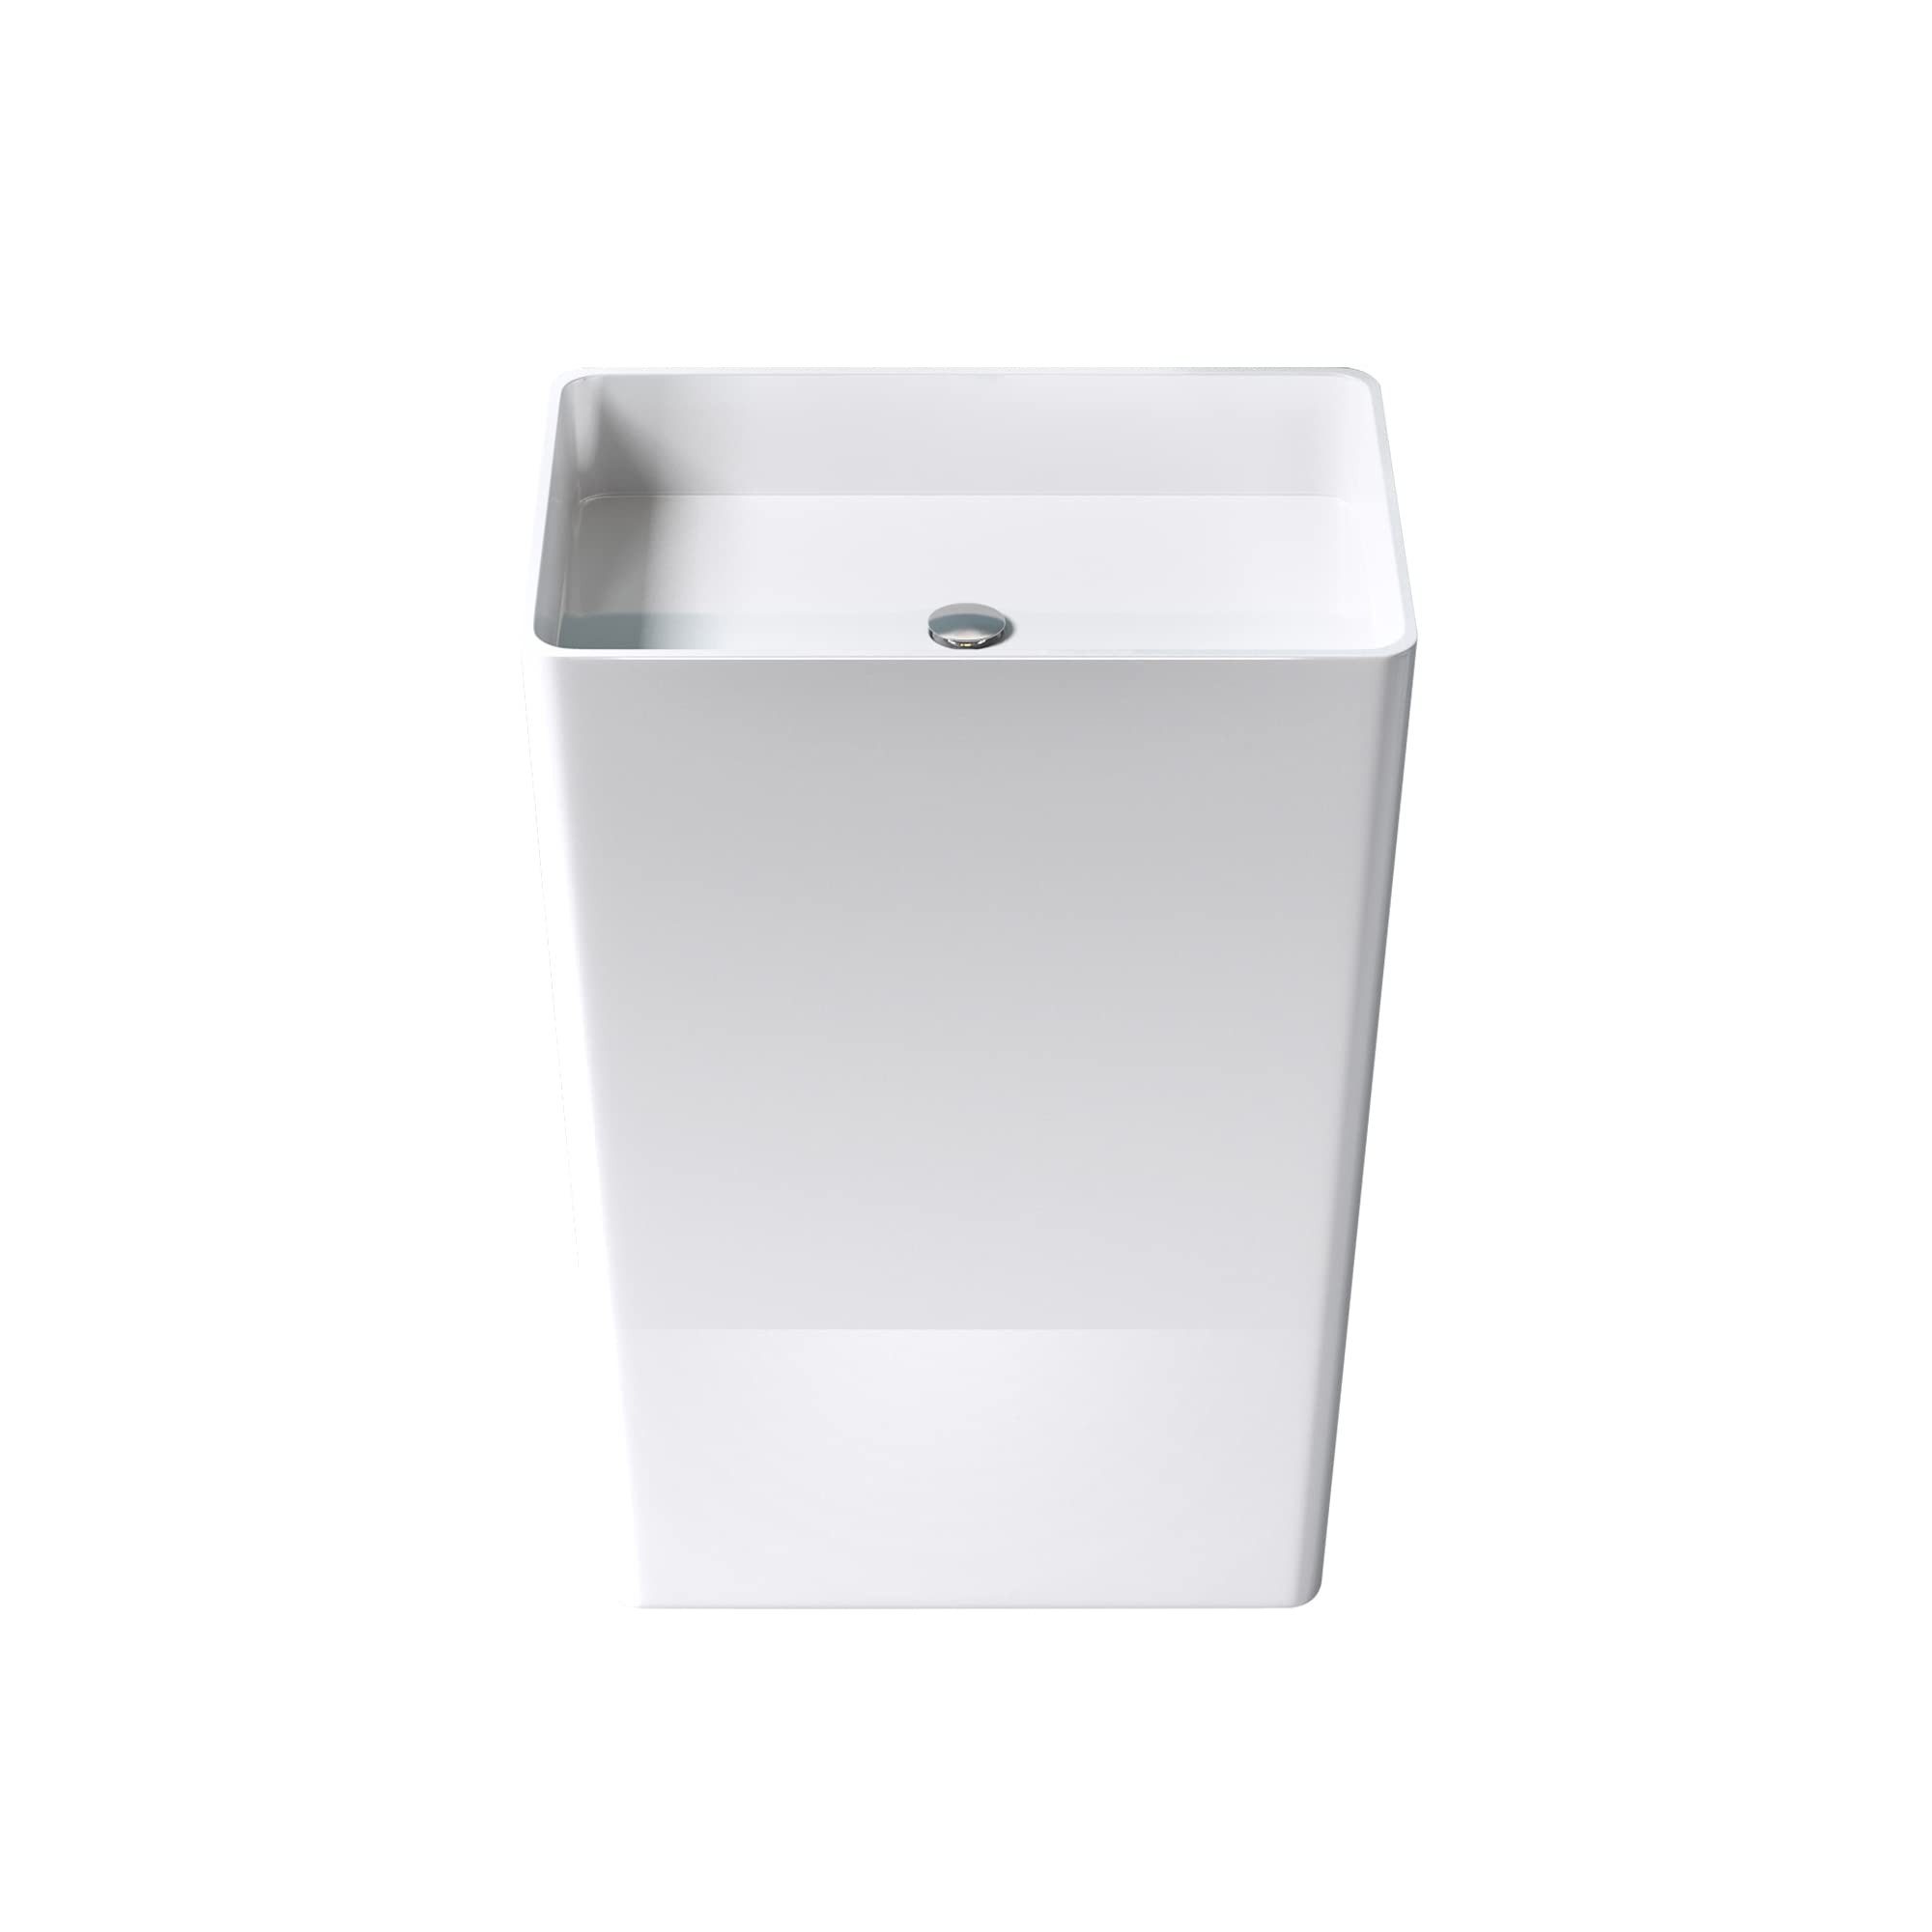 Mai & Mai Aufsatzwaschbecken Design Standwaschbecken freistehend Col36 weiß, aus Mineralguss